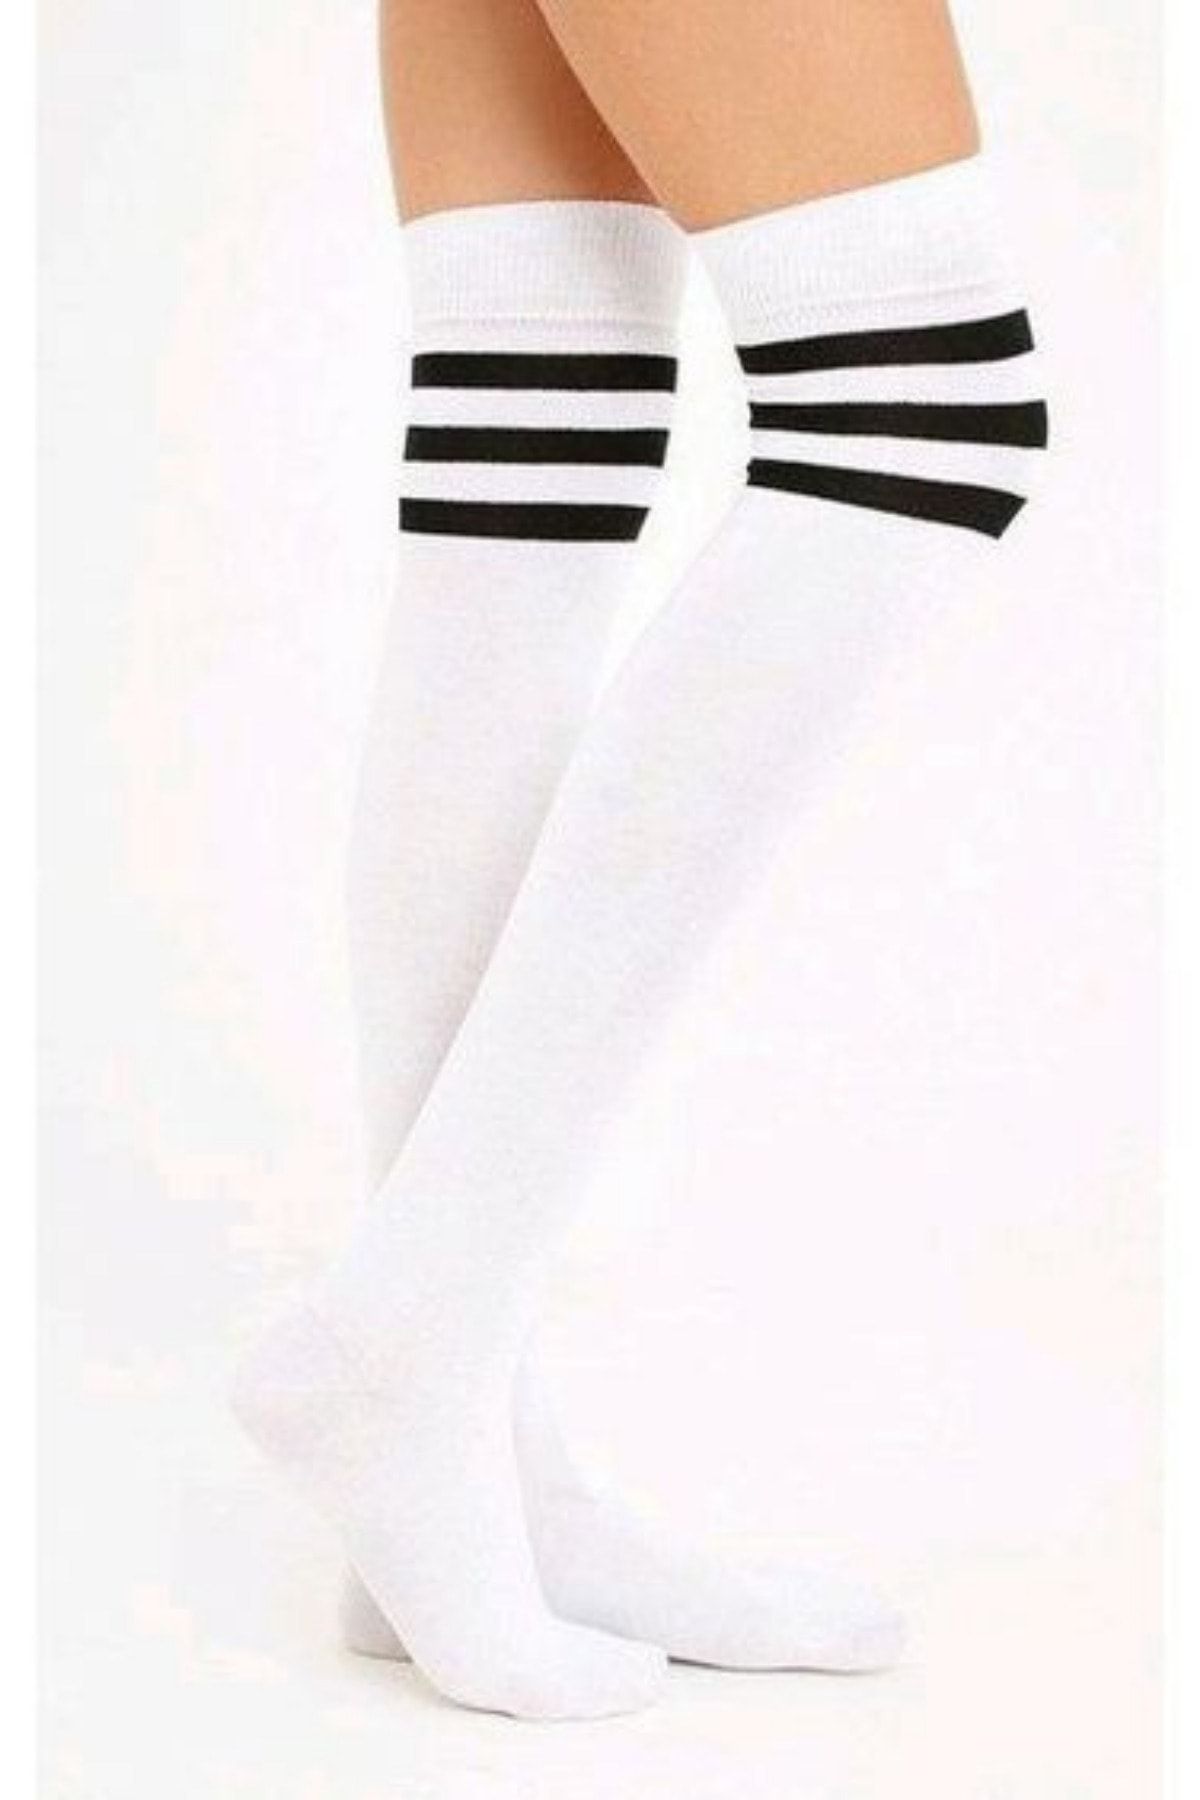 KARDEŞLER ÇORAP Siyah Çizgili Beyaz Diz Üstü Pamuklu Çorap